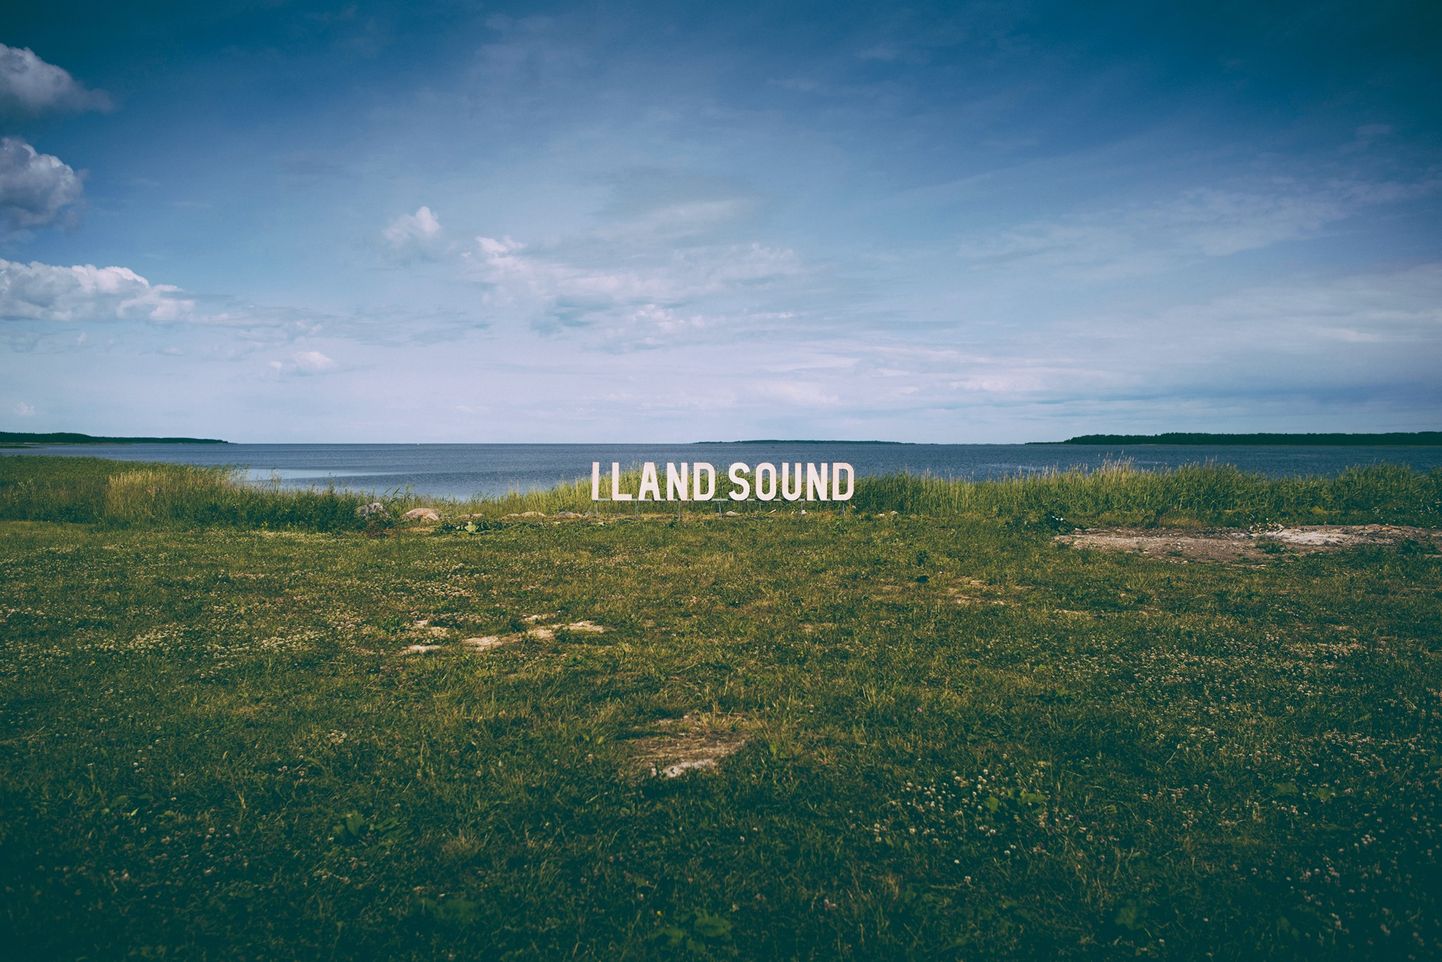 I Land Sound